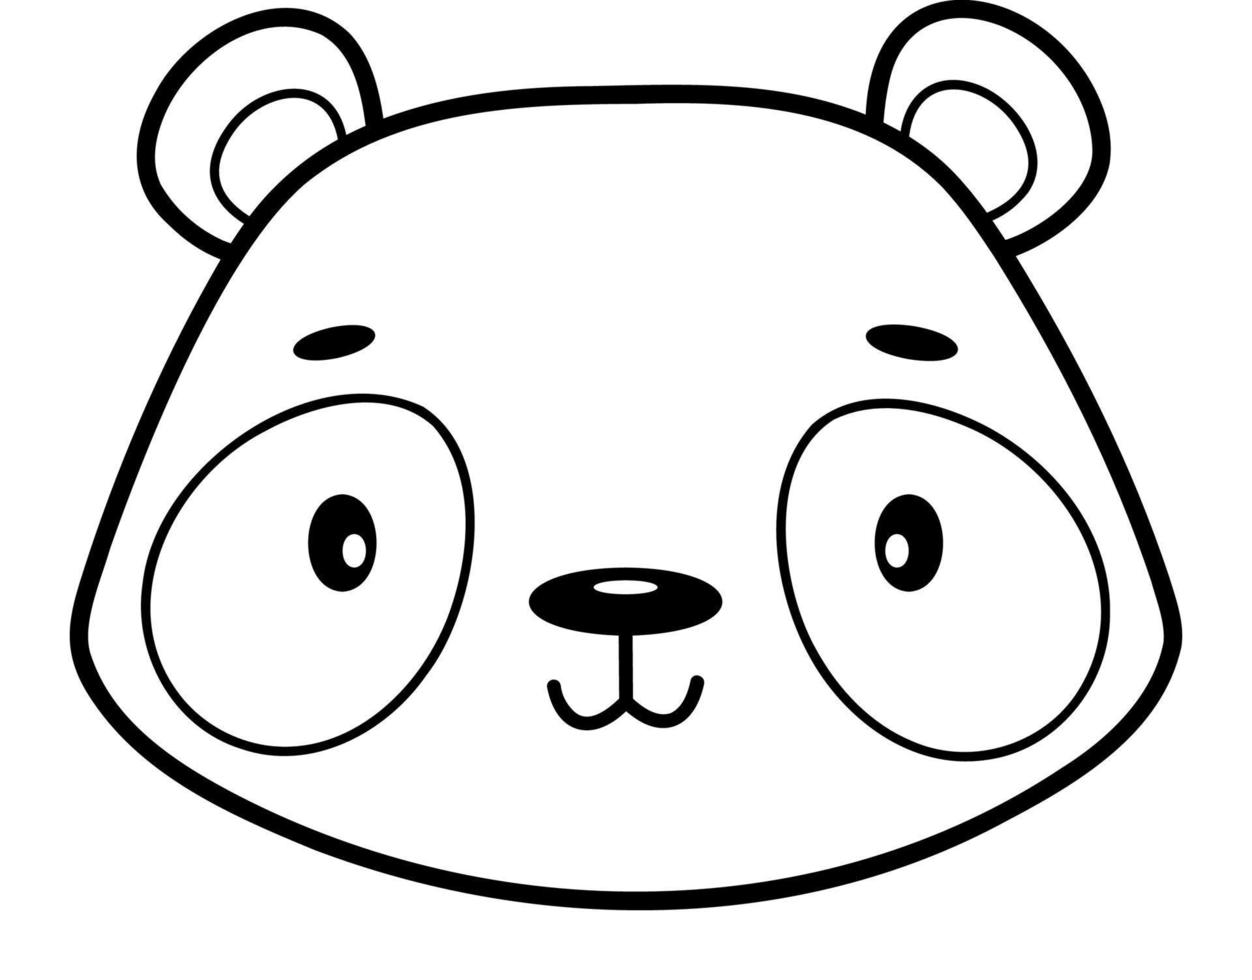 livre de coloriage ou page pour les enfants. illustration de contour noir et blanc de panda. vecteur